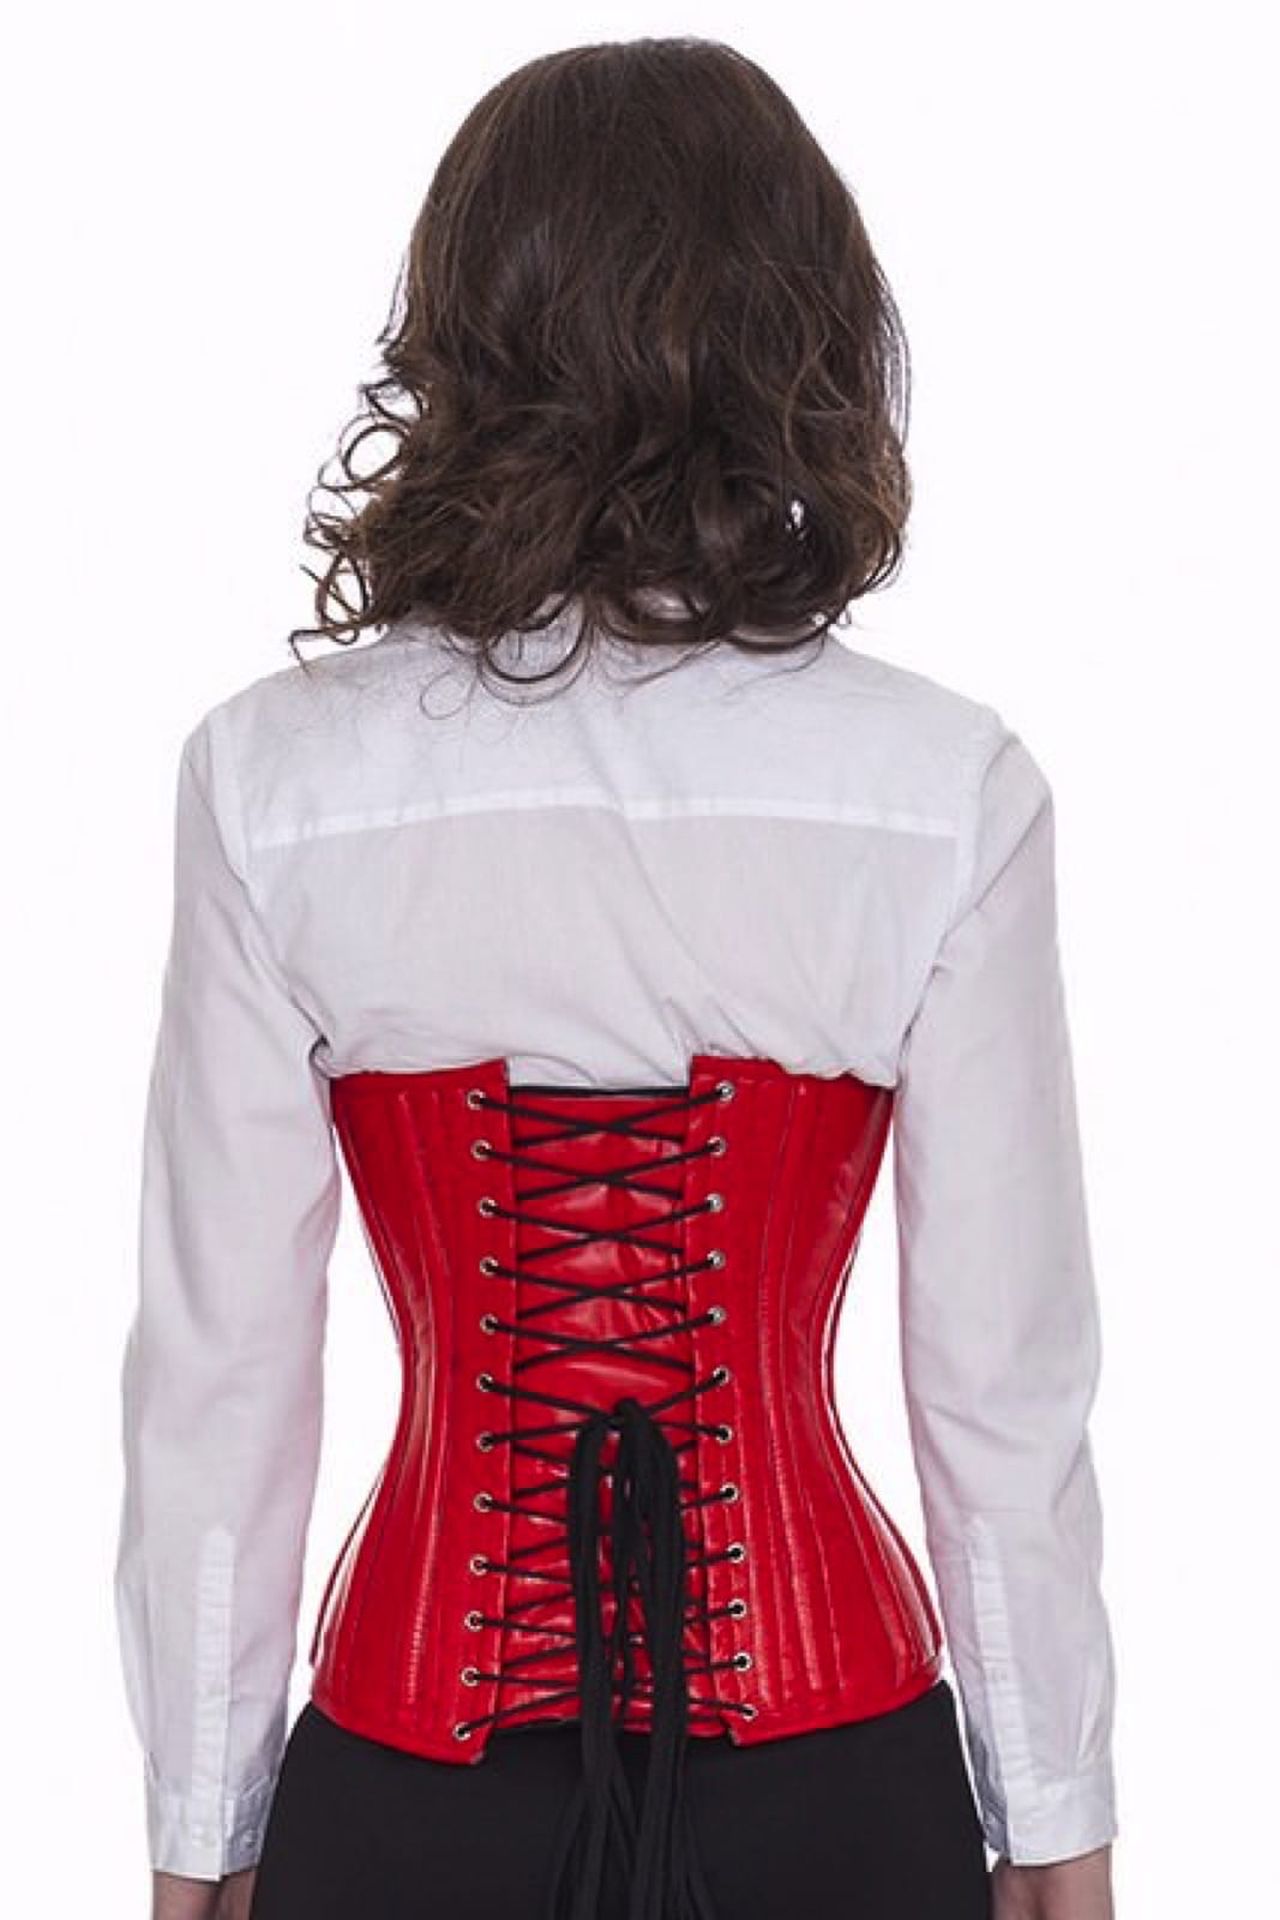 Leren corset rood onderborst met gespen Korset lc23